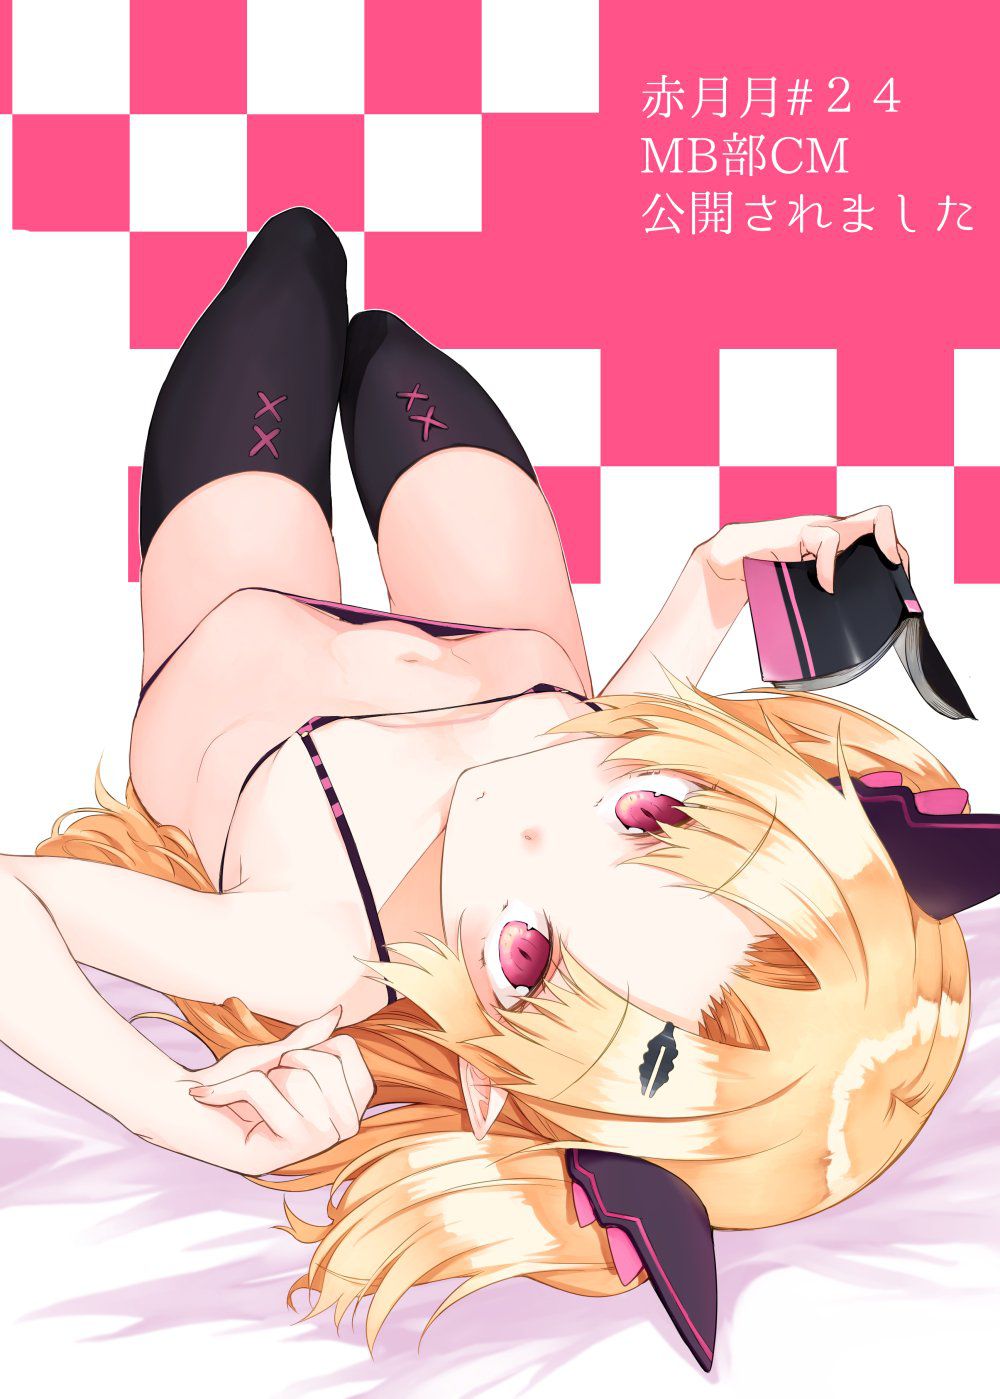 [Secondary erotic] Vtuber Akazake Yuni's and lewd image summary 28